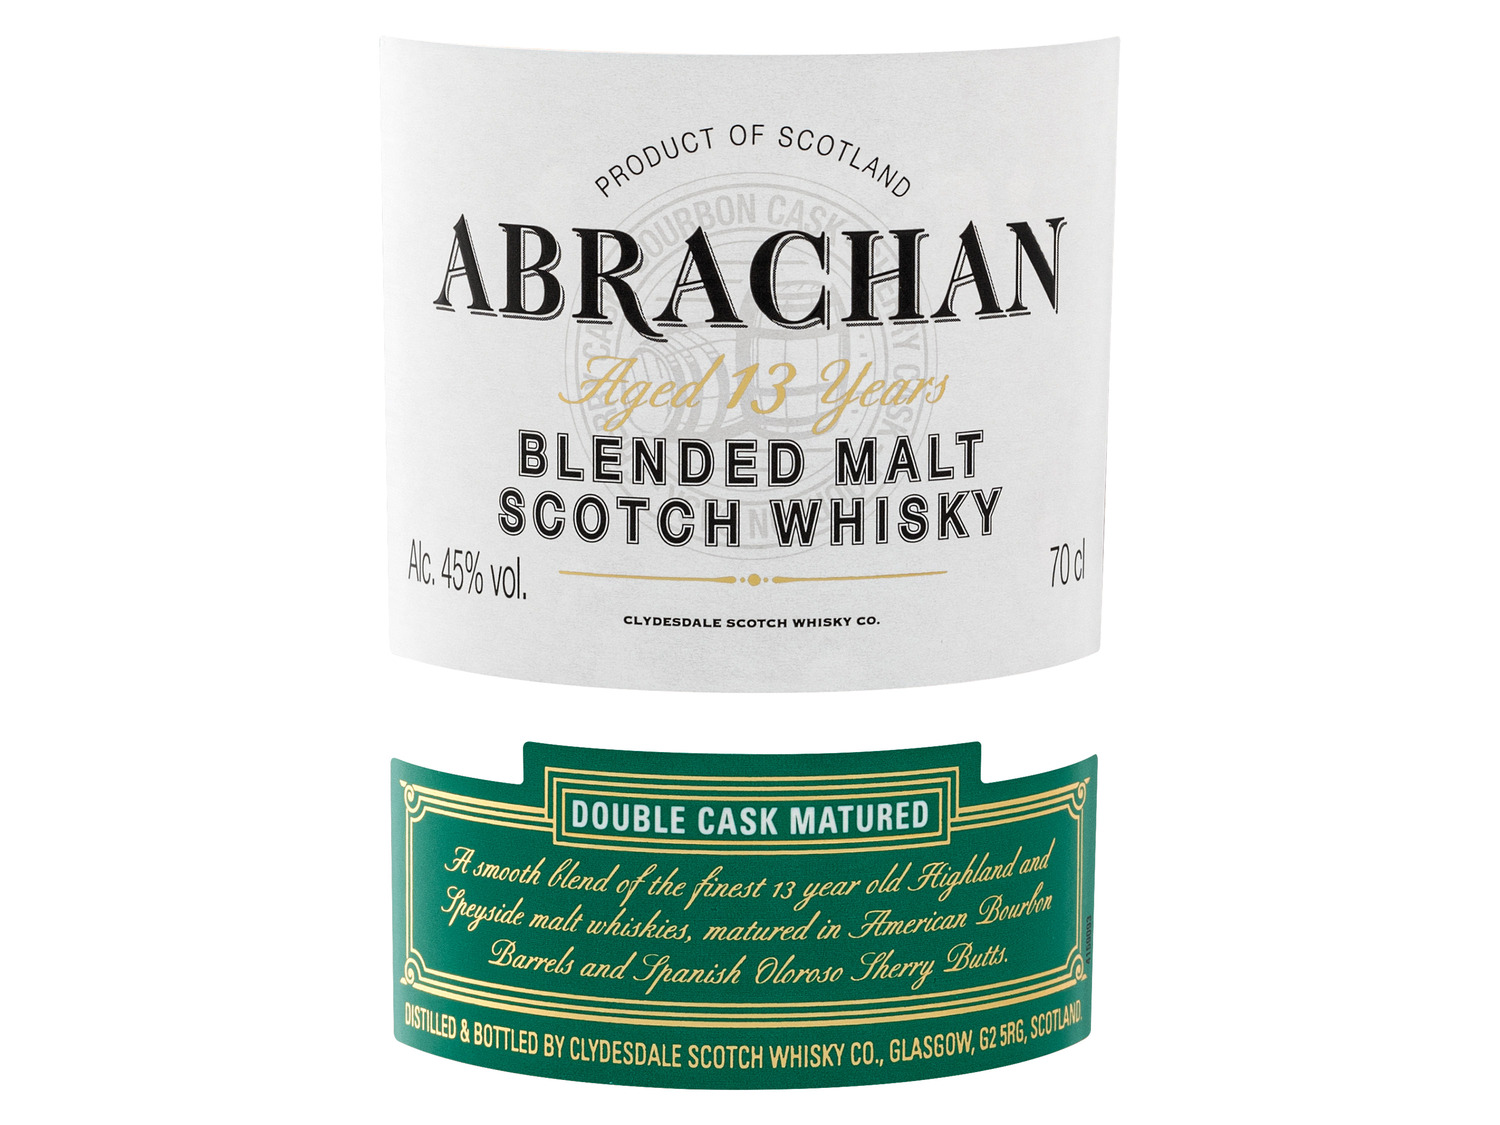 Abrachan Double Cask Matured Blended Malt Scotch Whisk…